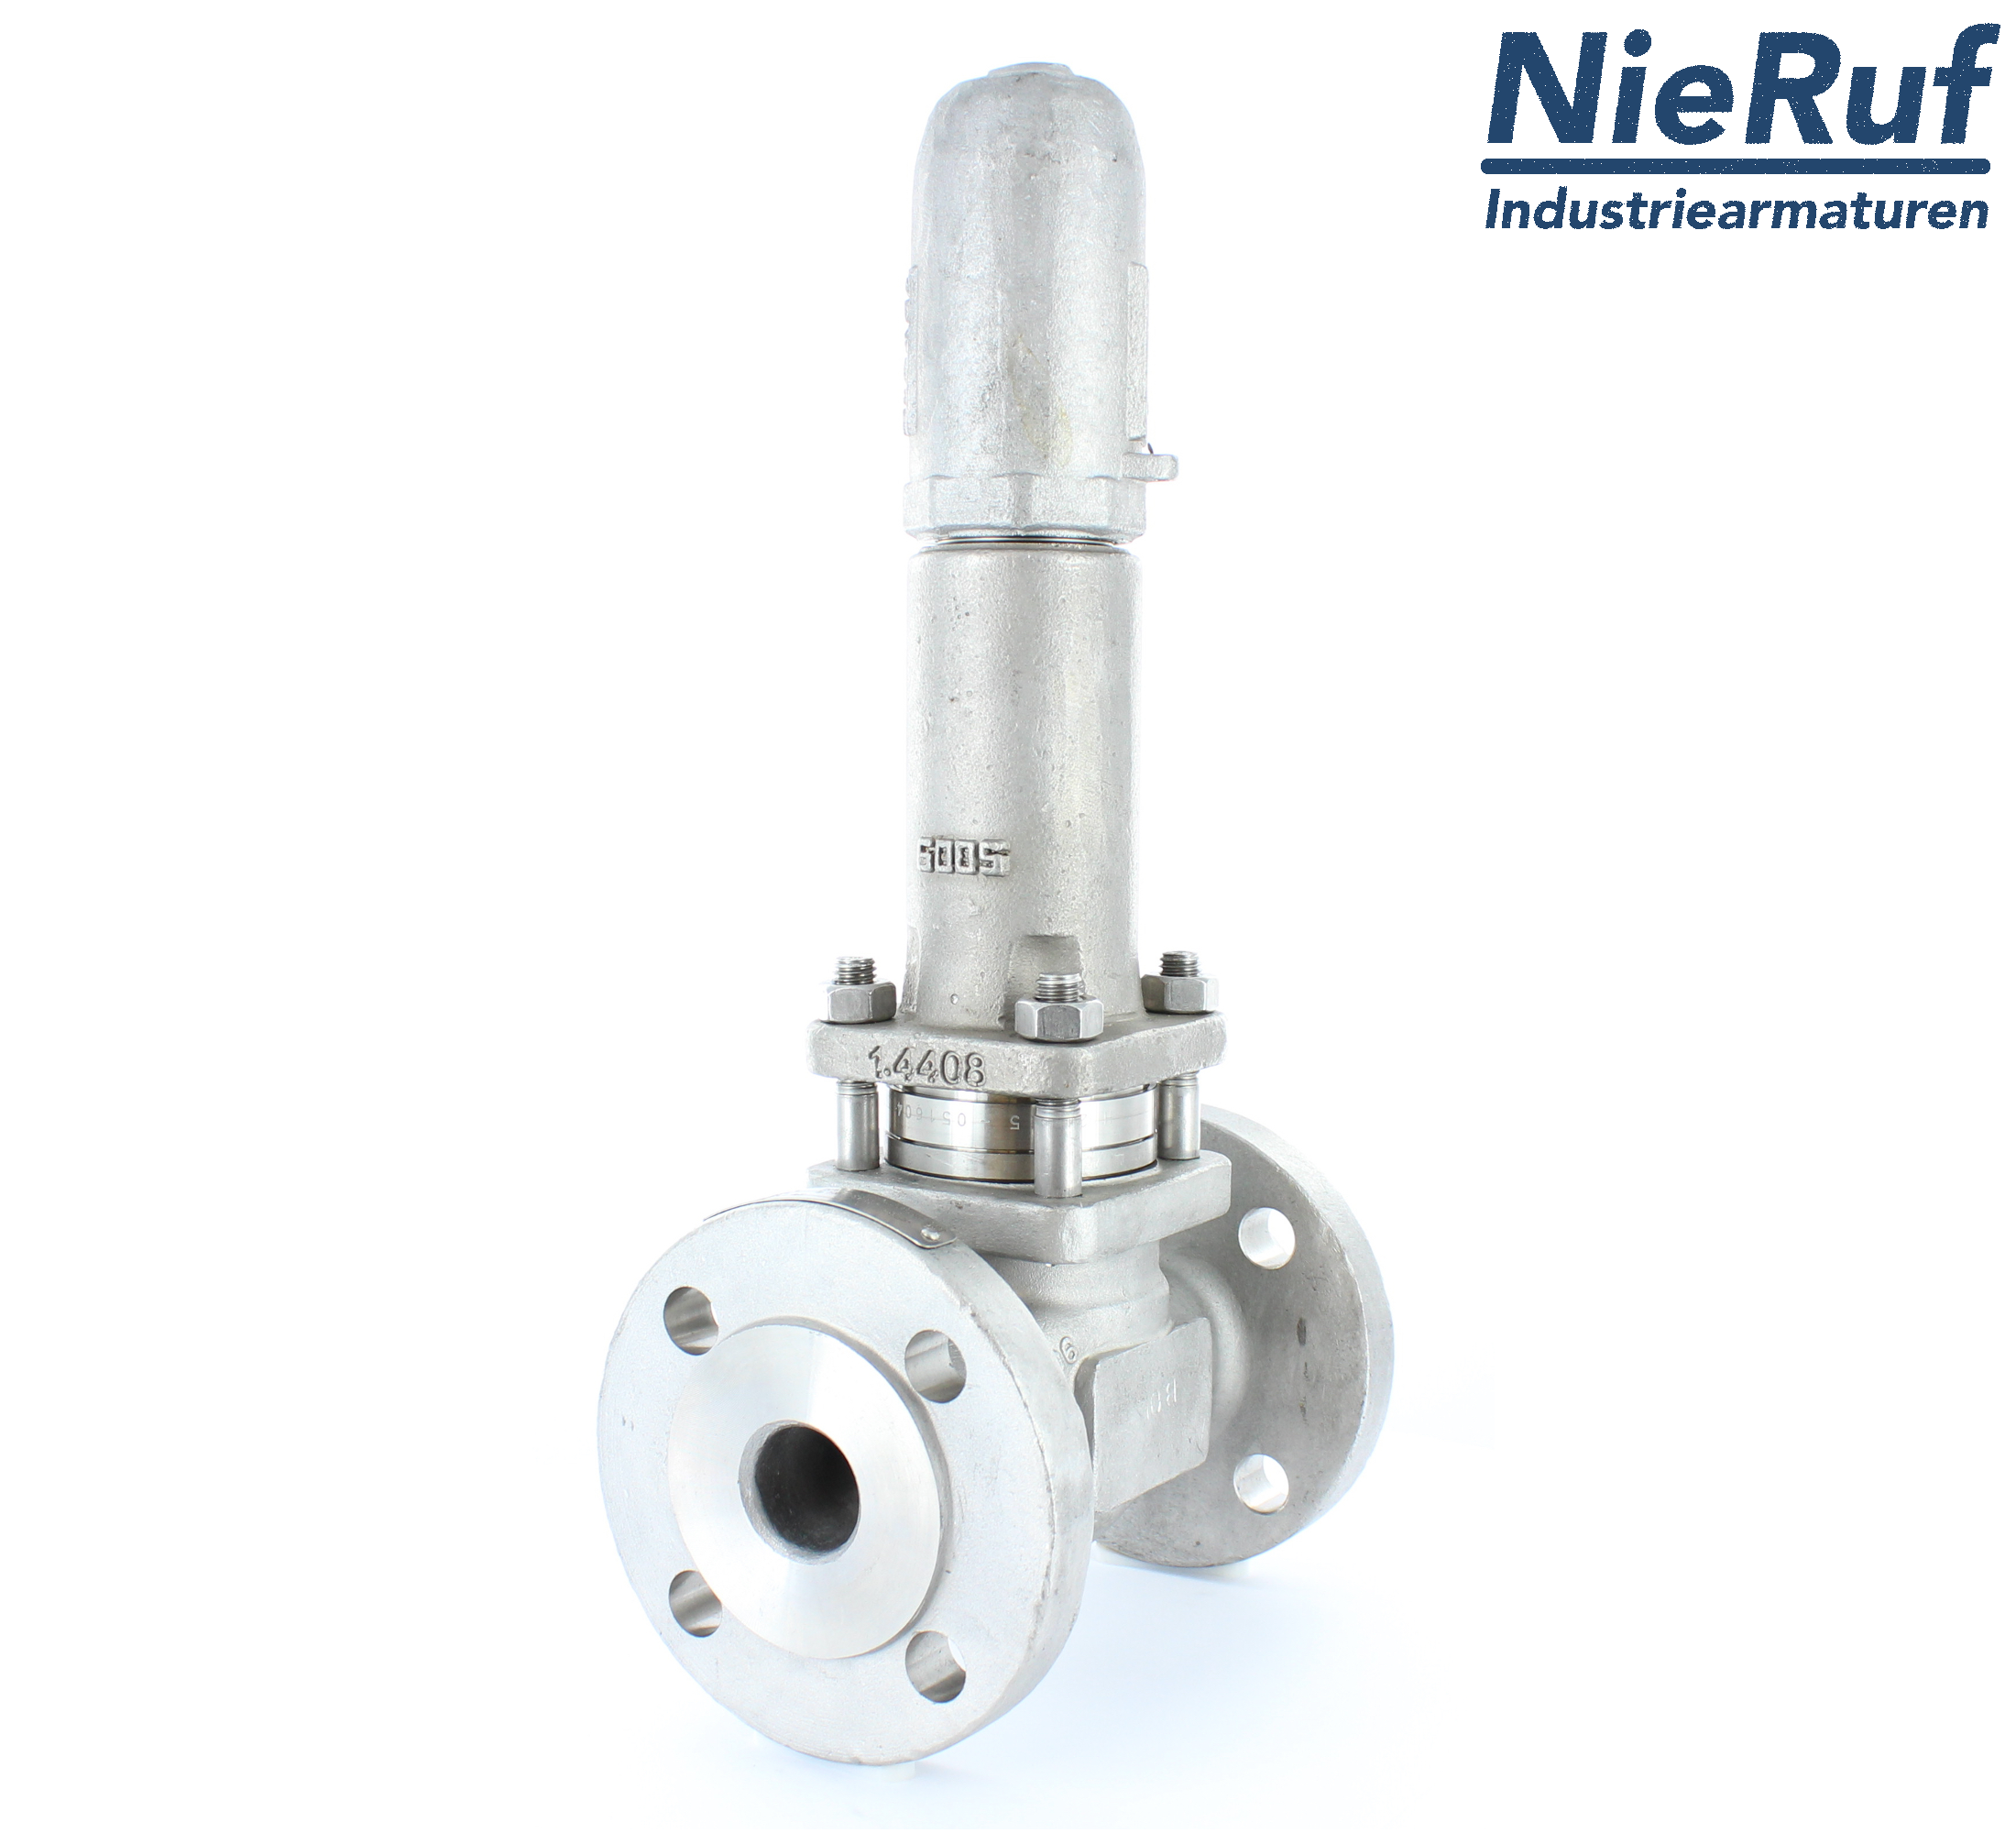 piston overflow valve DN 40 UV13 cast iron 1.0619+N 2,0 - 5,0 bar